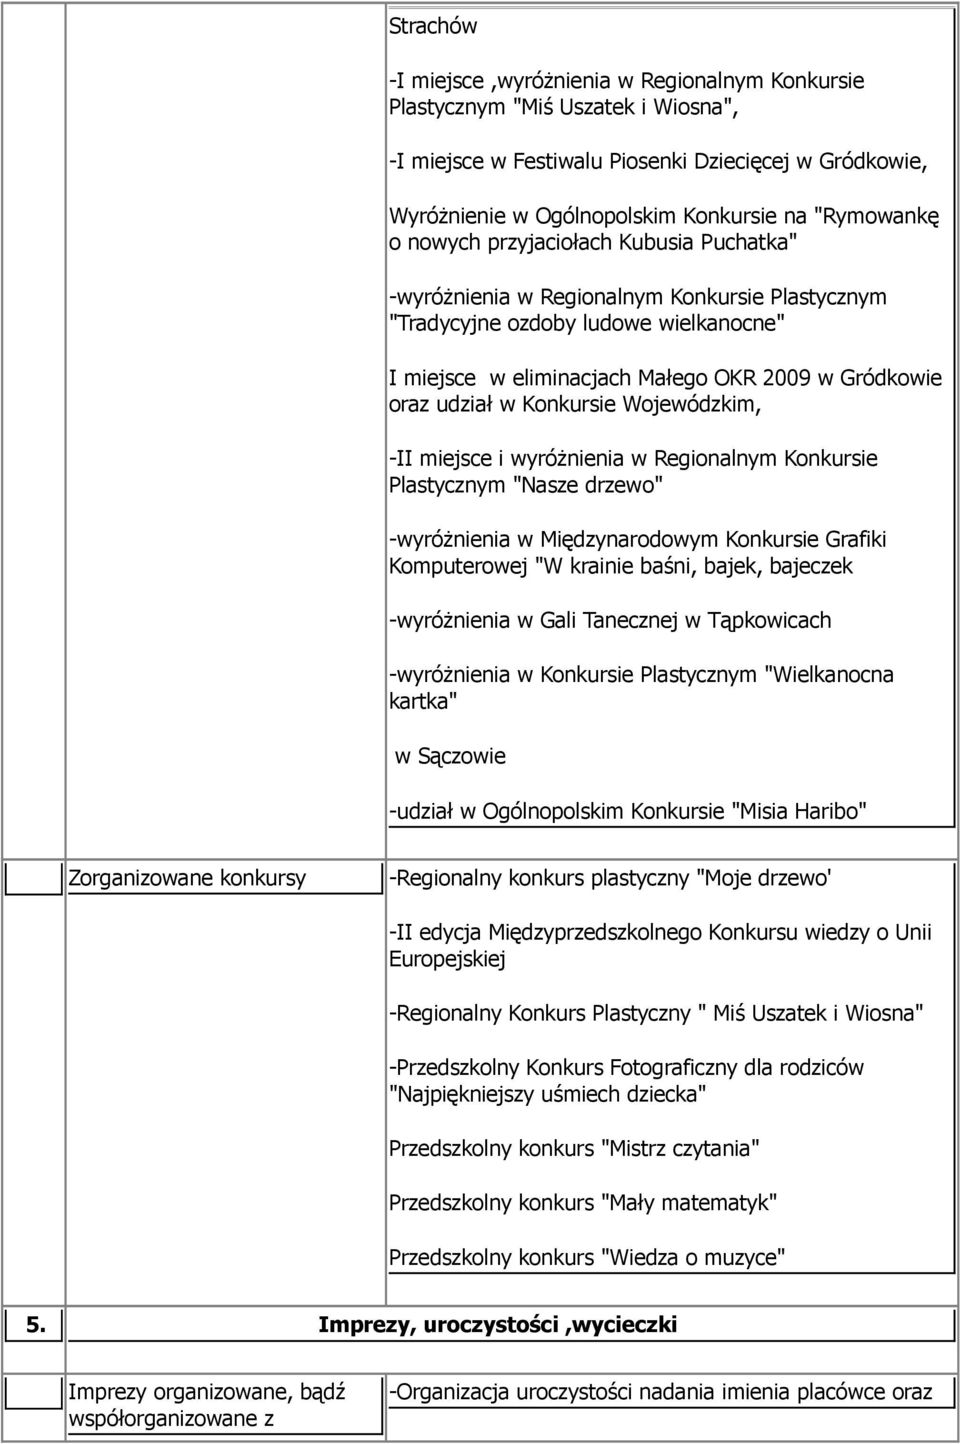 Konkursie Wojewódzkim, -II miejsce i wyróżnienia w Regionalnym Konkursie Plastycznym "Nasze drzewo" -wyróżnienia w Międzynarodowym Konkursie Grafiki Komputerowej "W krainie baśni, bajek, bajeczek